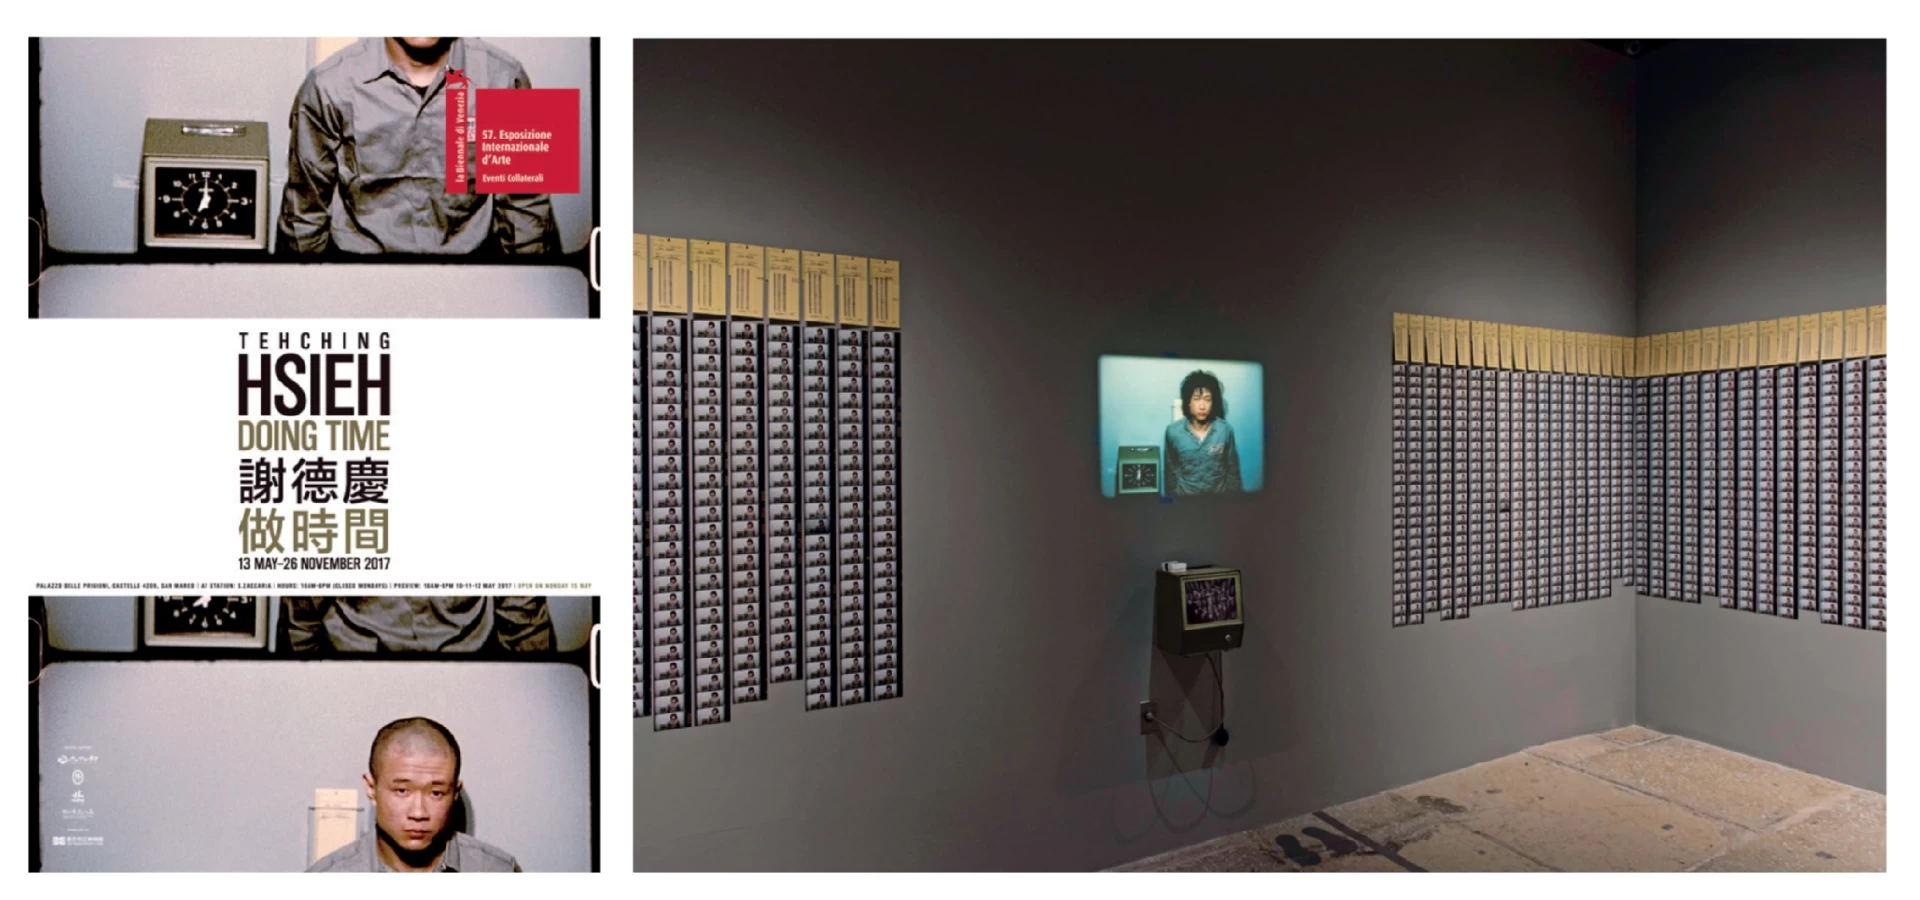 第57屆威尼斯雙年展台灣館「謝德慶：做時間」海報及展場一景，《一年行為表演1980-1981》，2017.05-圖片